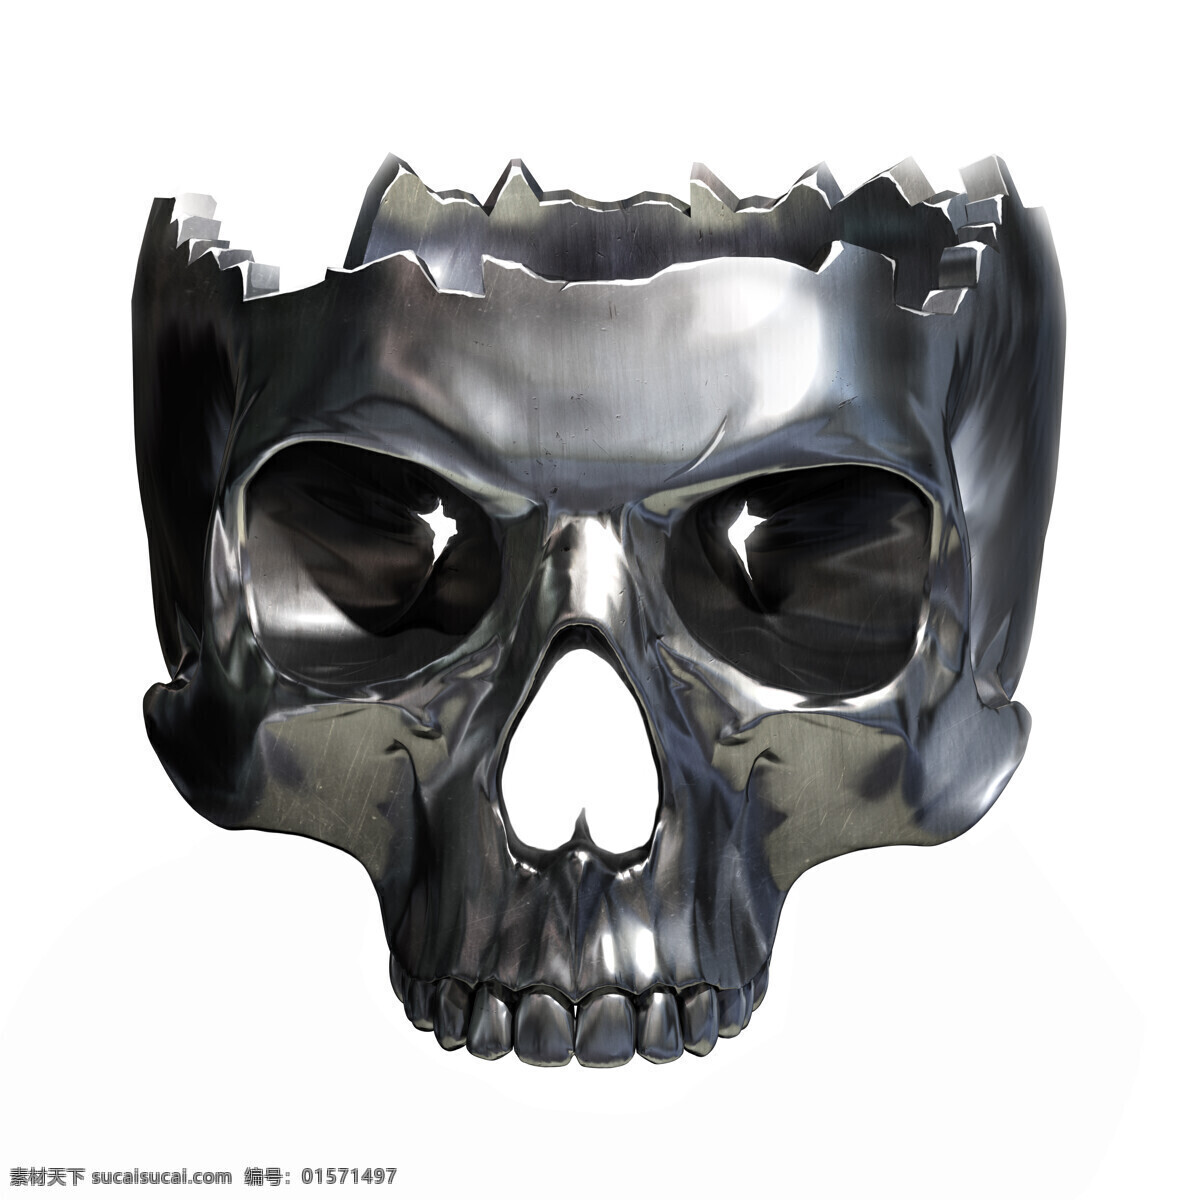 金属骷髅 金属 骷髅 金属骷髅图片 不锈钢骷髅 金属质感 头骨 其他类别 生活百科 白色